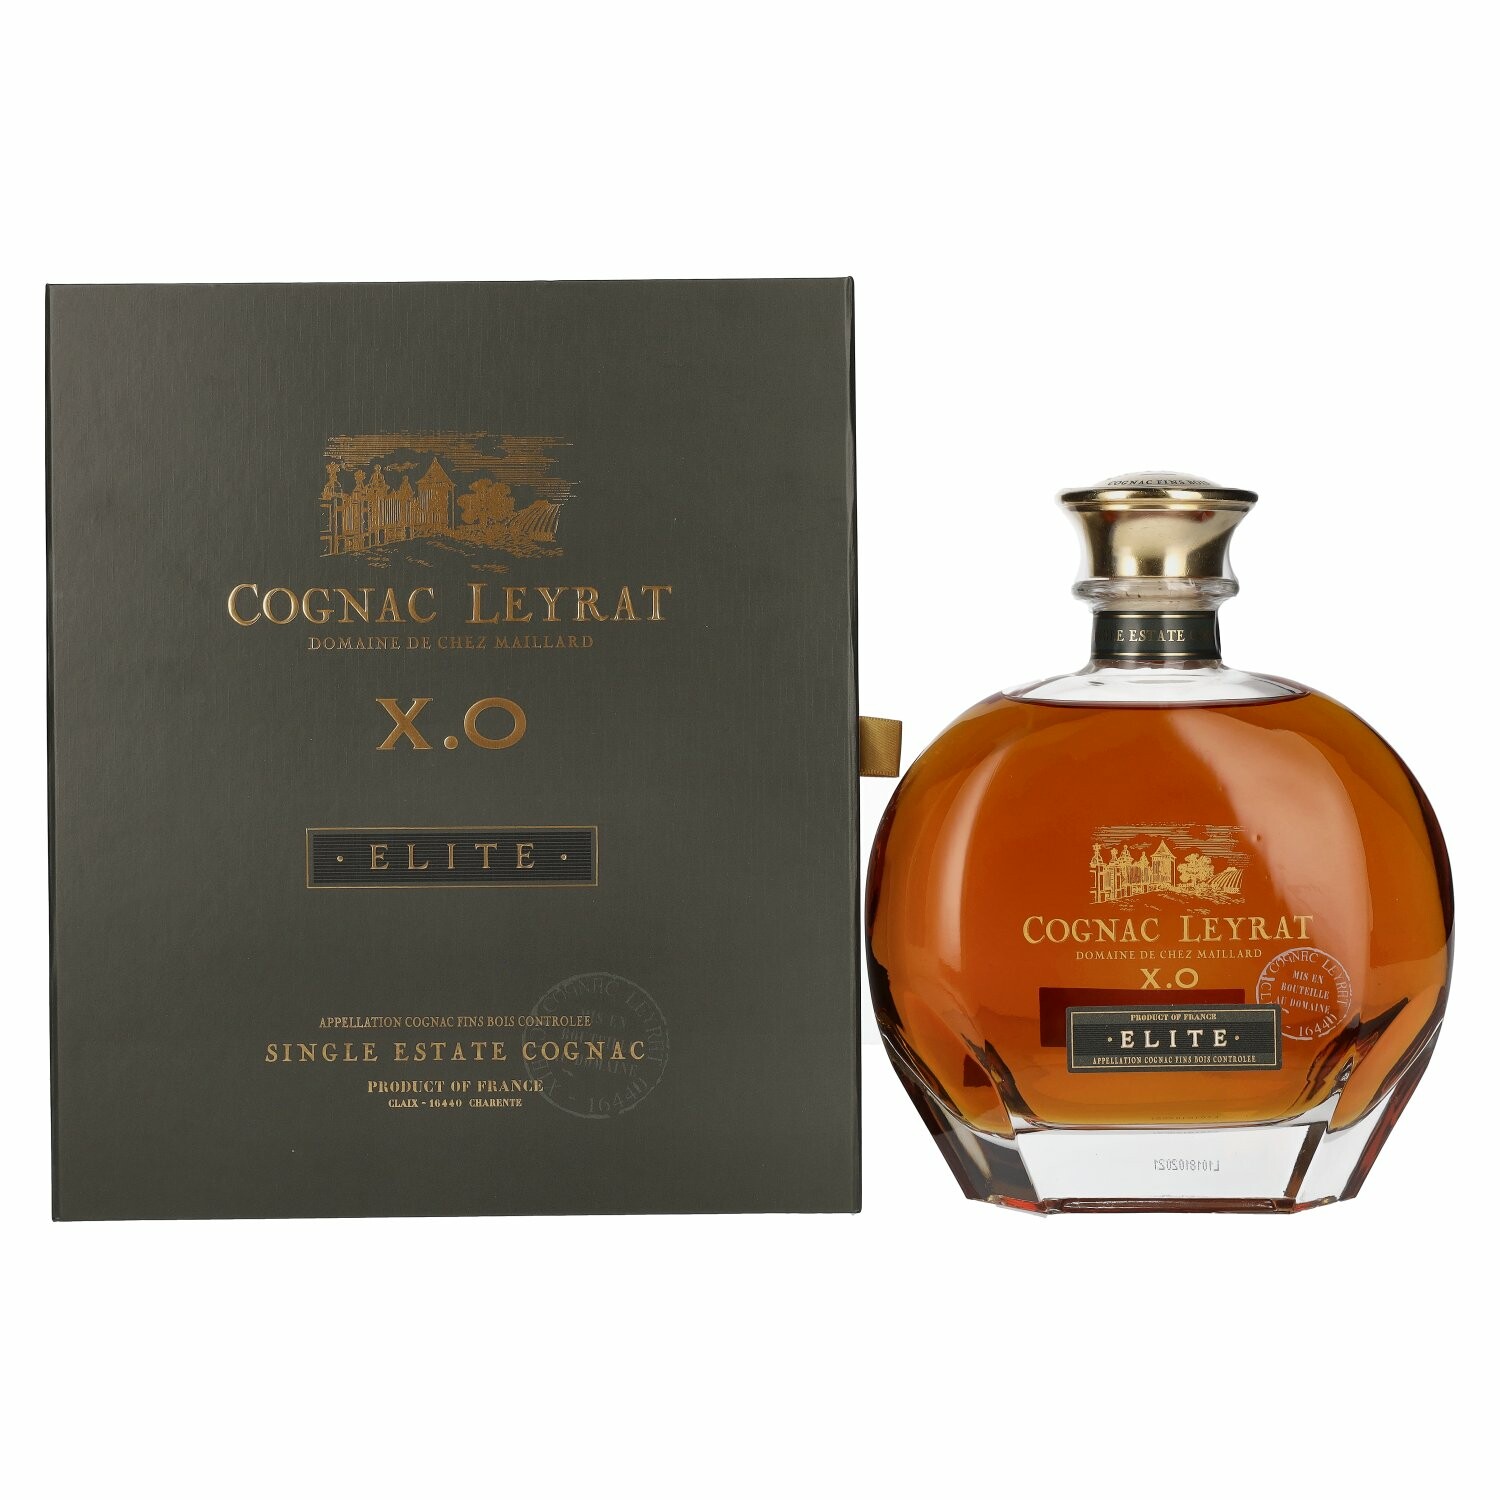 Cognac Leyrat X.O. Elite Single Estate Cognac 40% Vol. 0,7l in Giftbox